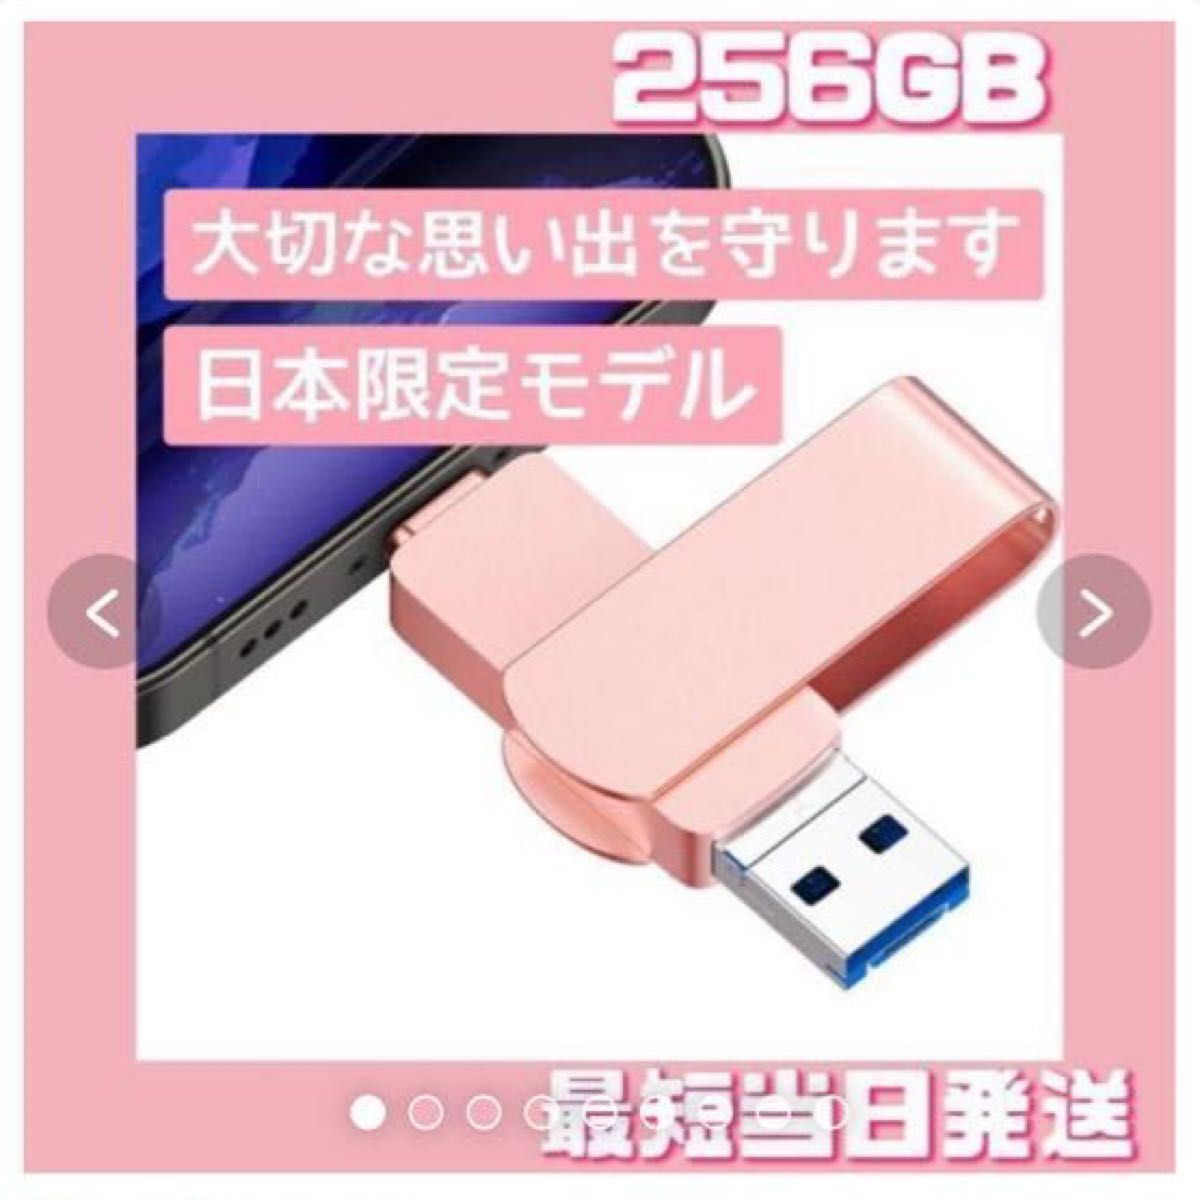 早い者勝ち❤️日本限定usbメモリ256GB iPhone ipad対応 | tspea.org